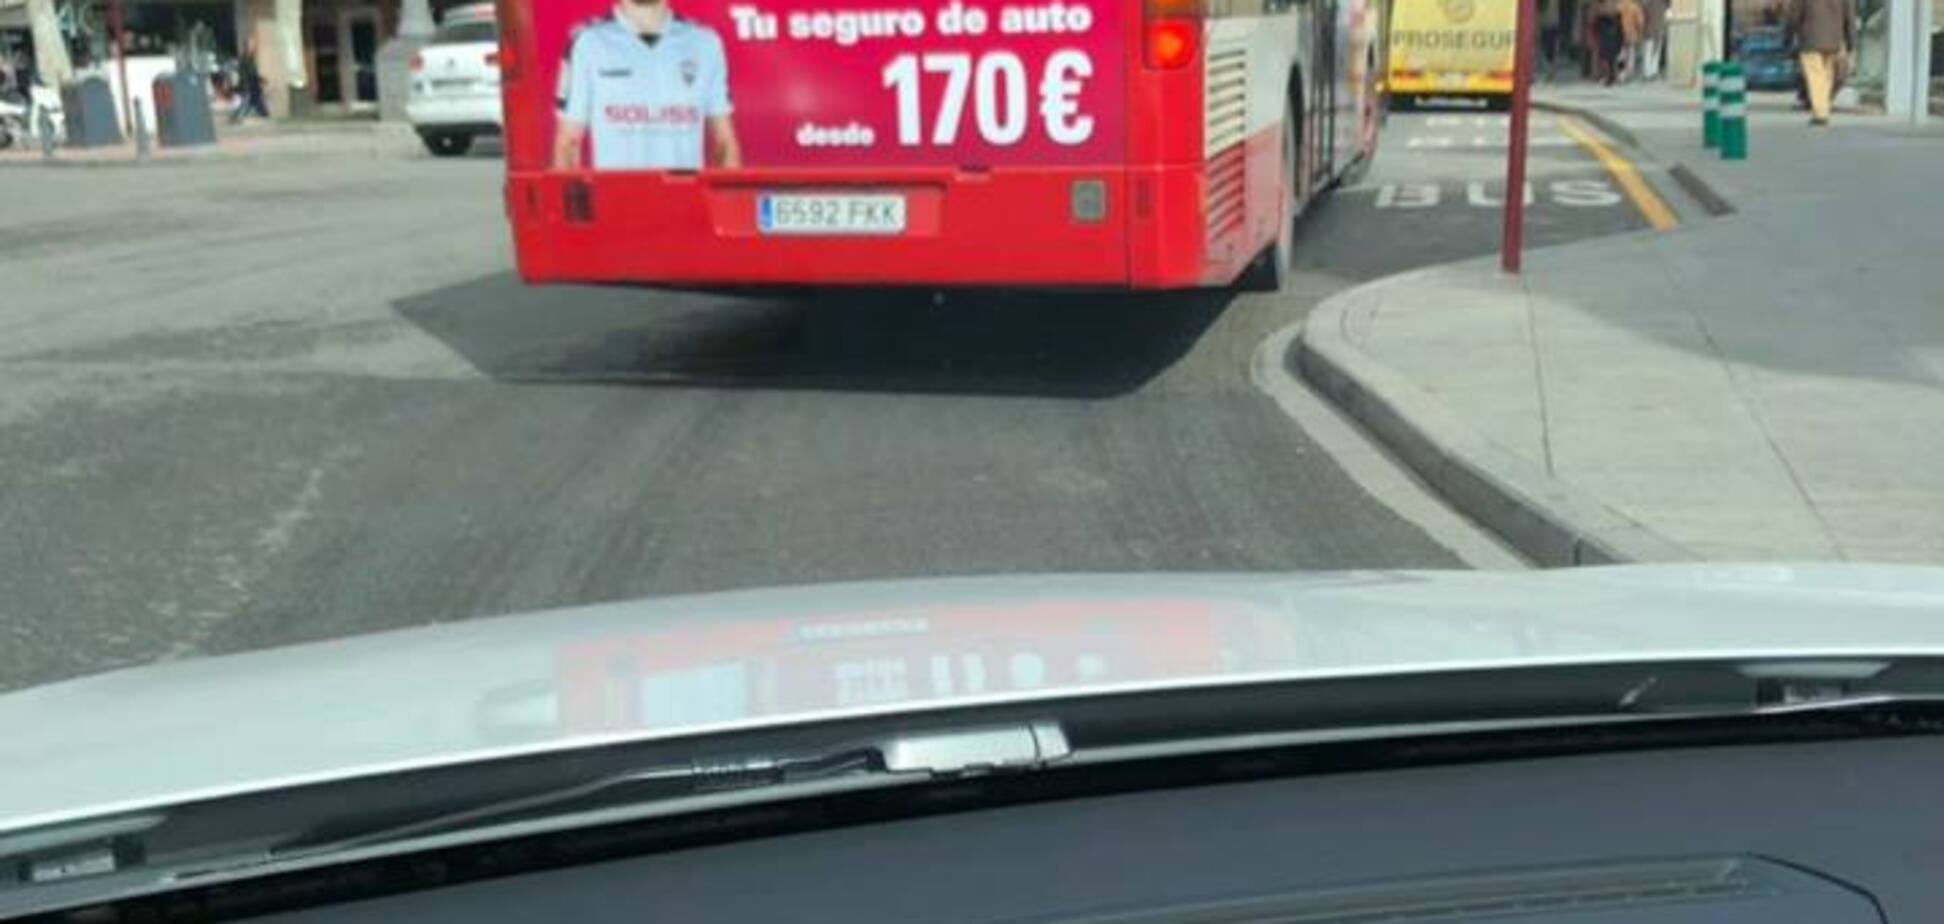 Изображен даже на автобусах: футболист сборной Украины стал звездой в Испании